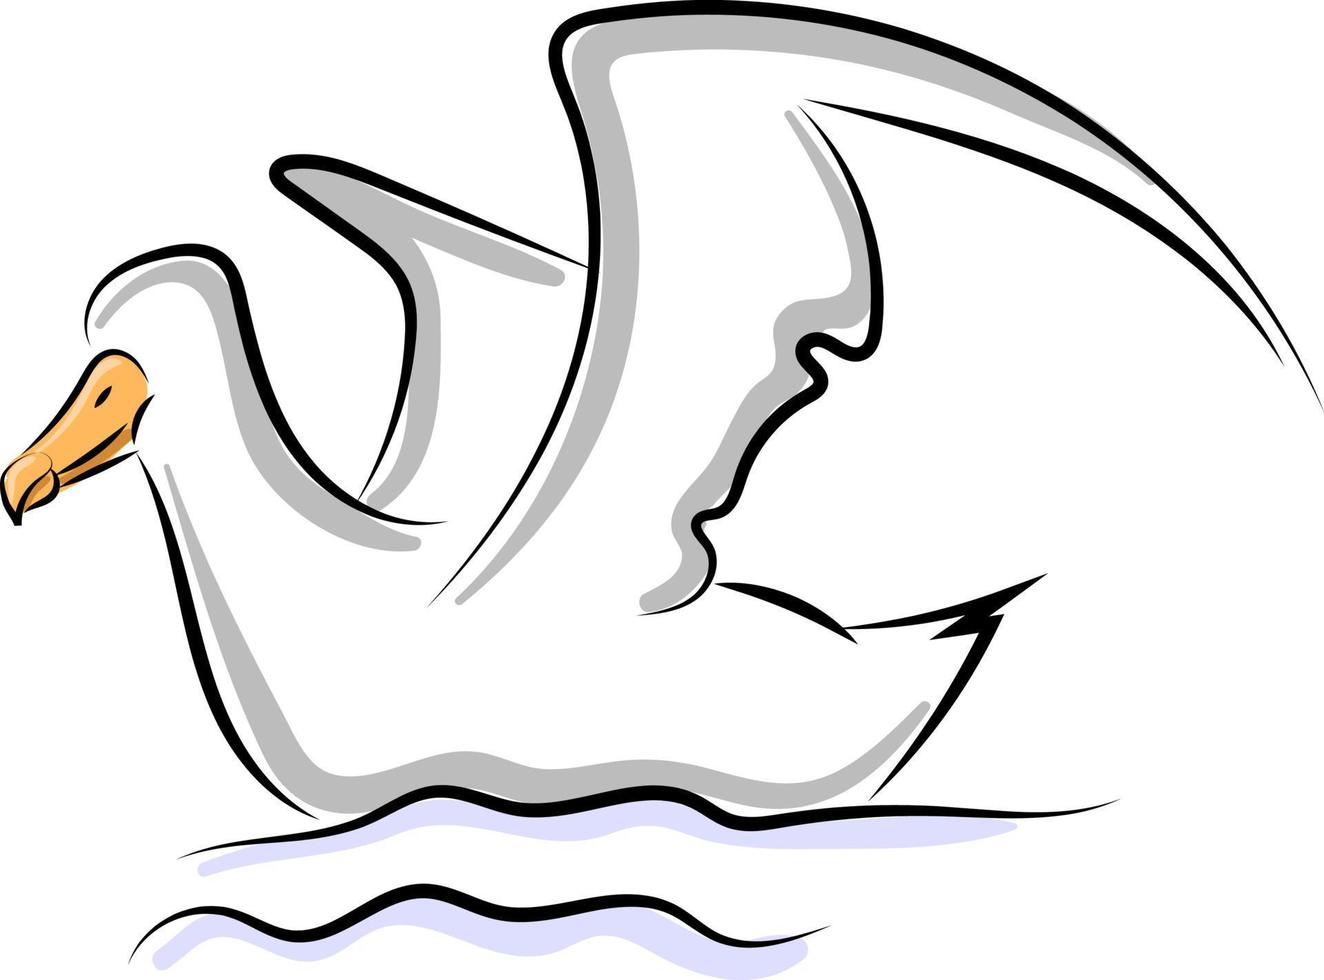 Vogel im Wasser, Illustration, Vektor auf weißem Hintergrund.